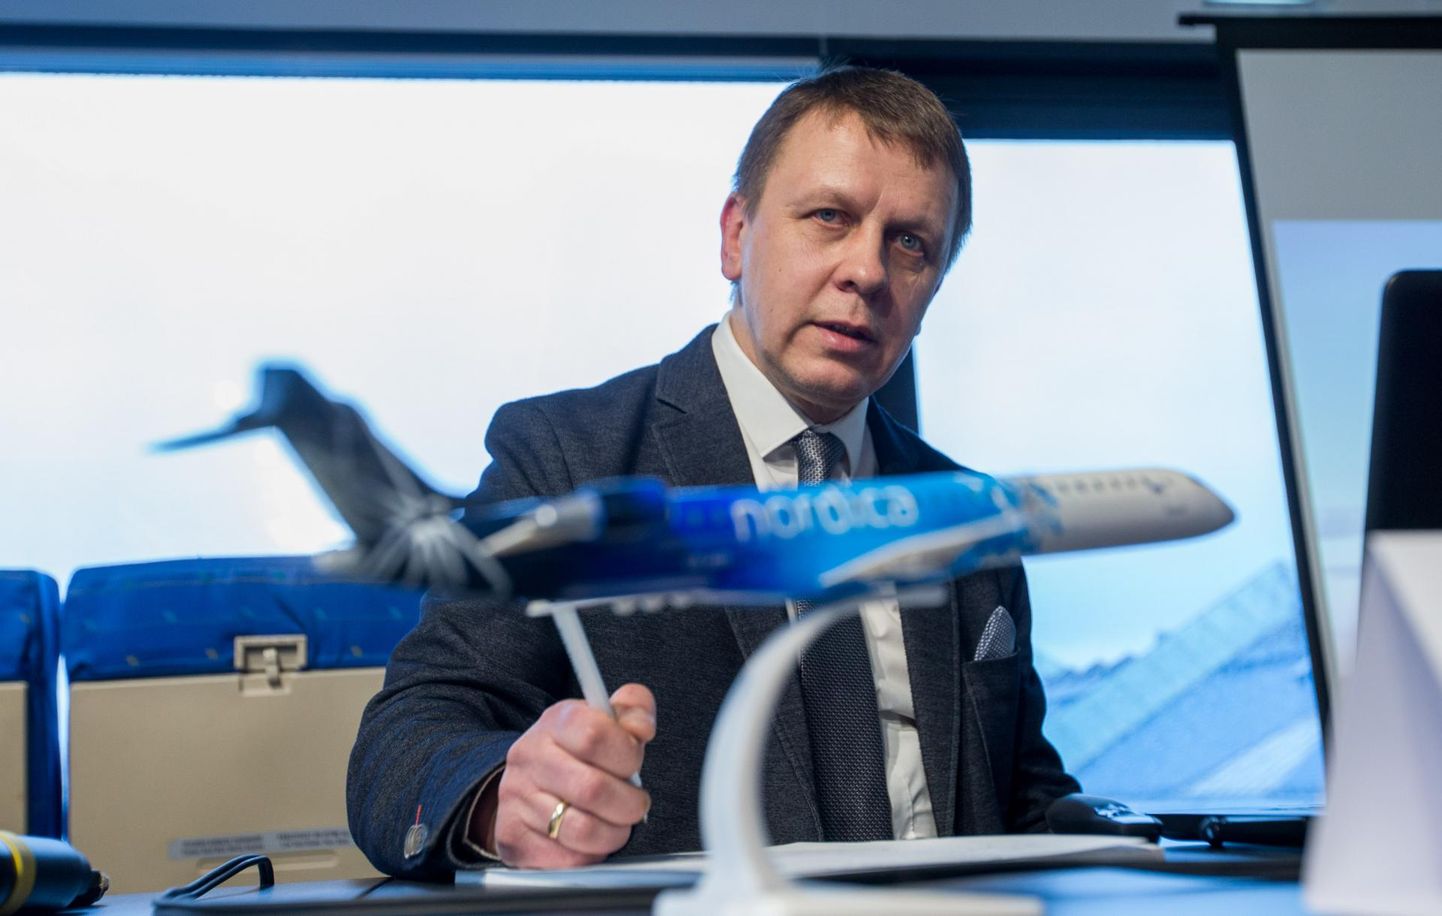 Вчерашнее заявление руководителя Nordica Яана Тамма об оставке стало большой новостью для авиационных кругов.